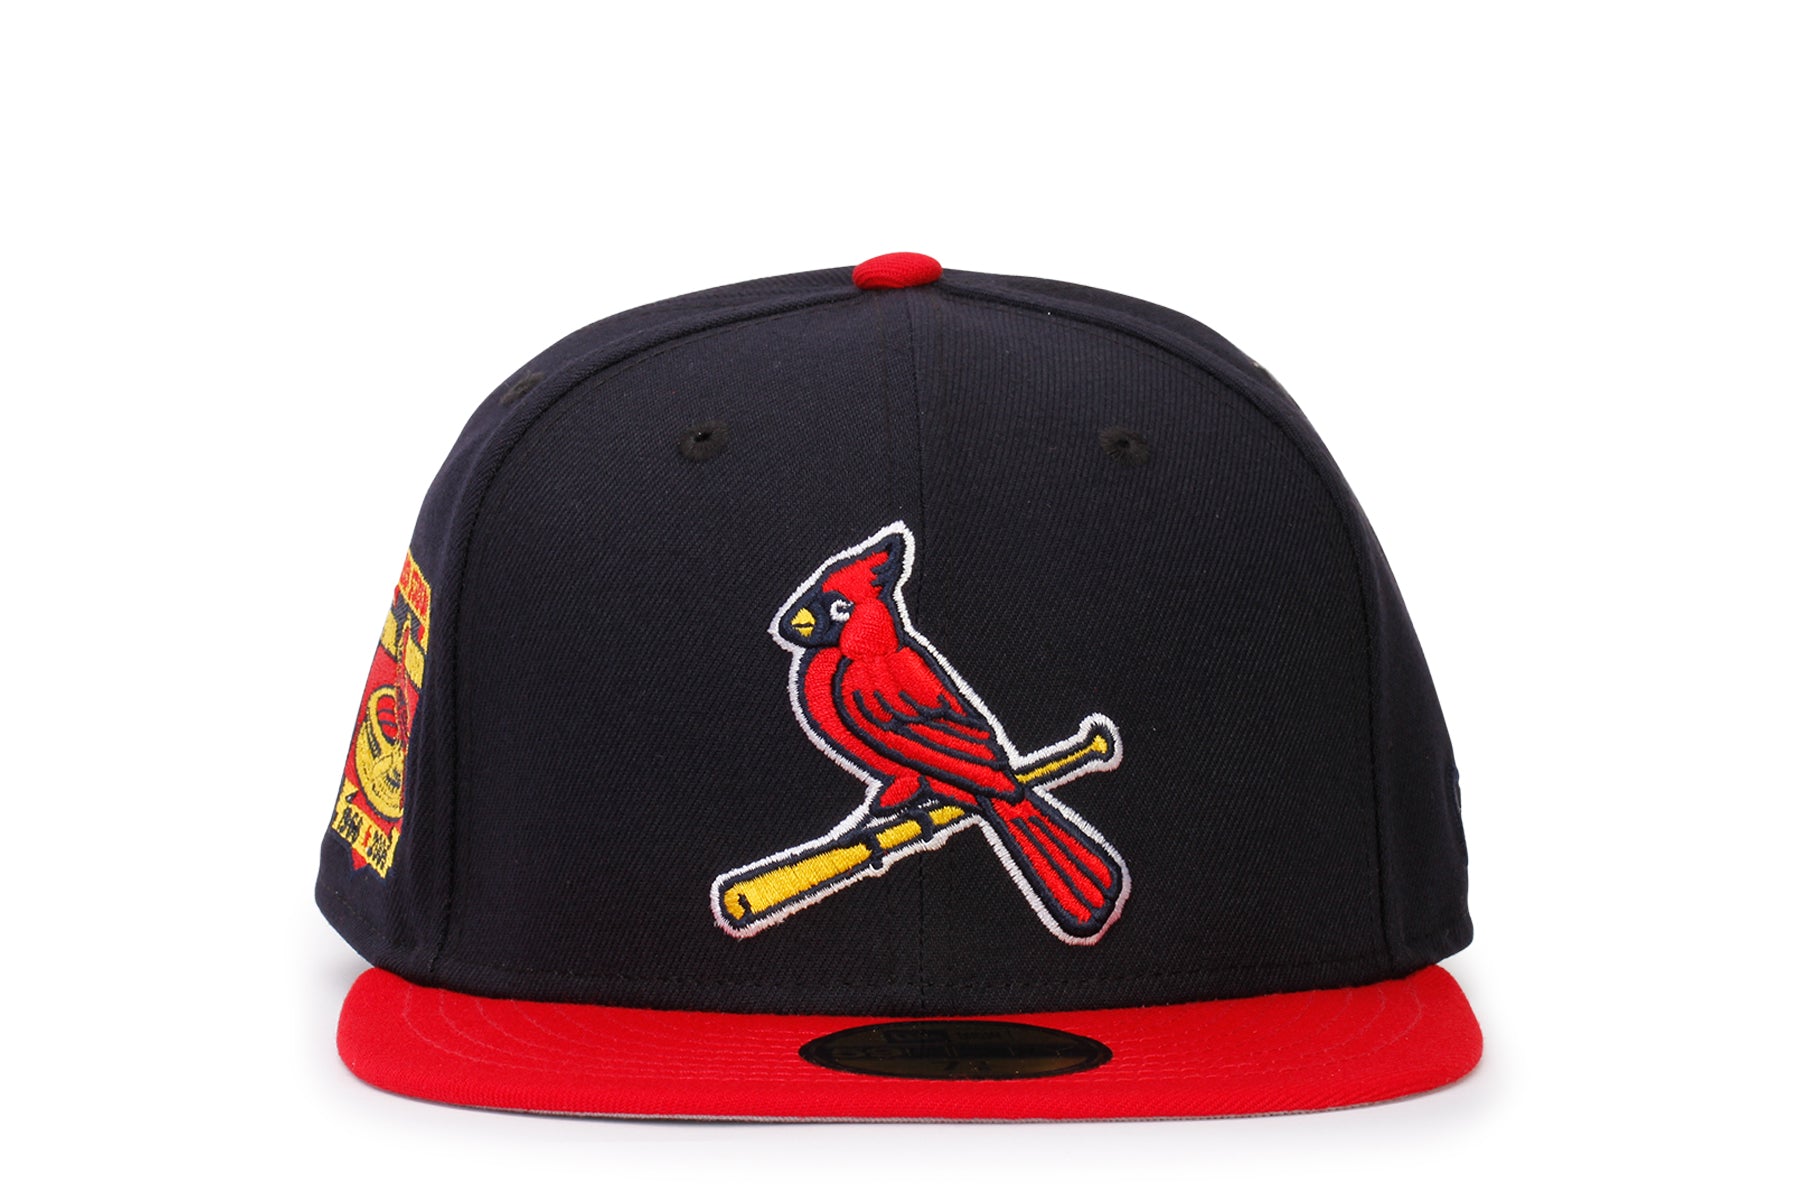 St. Louis Cardinals New Era 59Fifty Mens Baseball Navy Blue Cap Hat